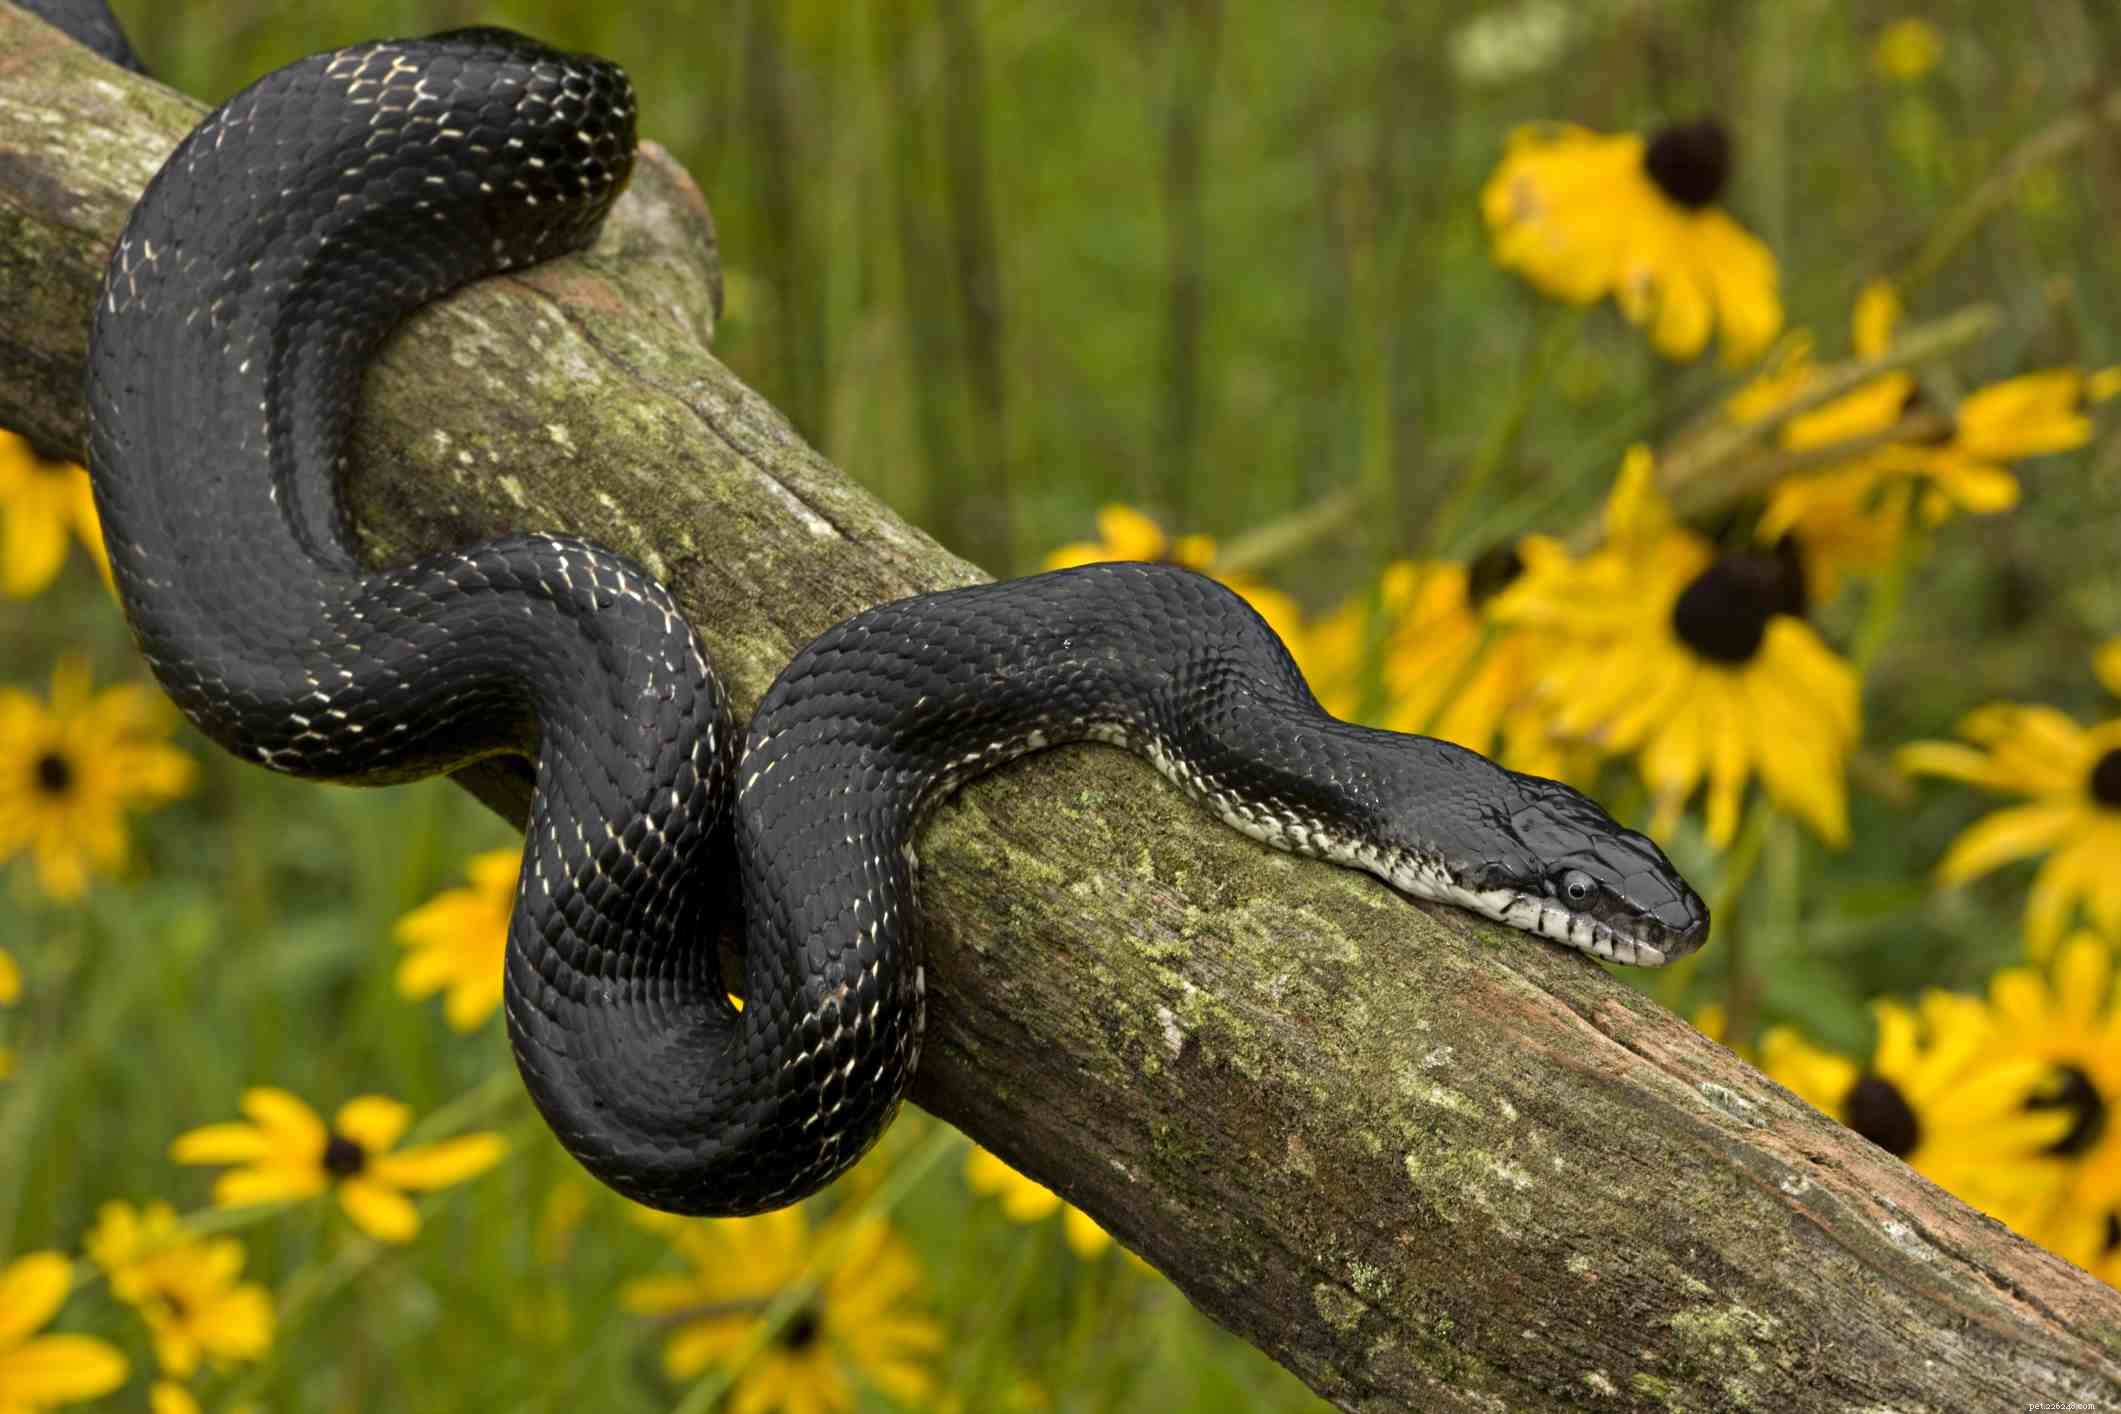 Specie di serpenti comunemente tenute come animali domestici